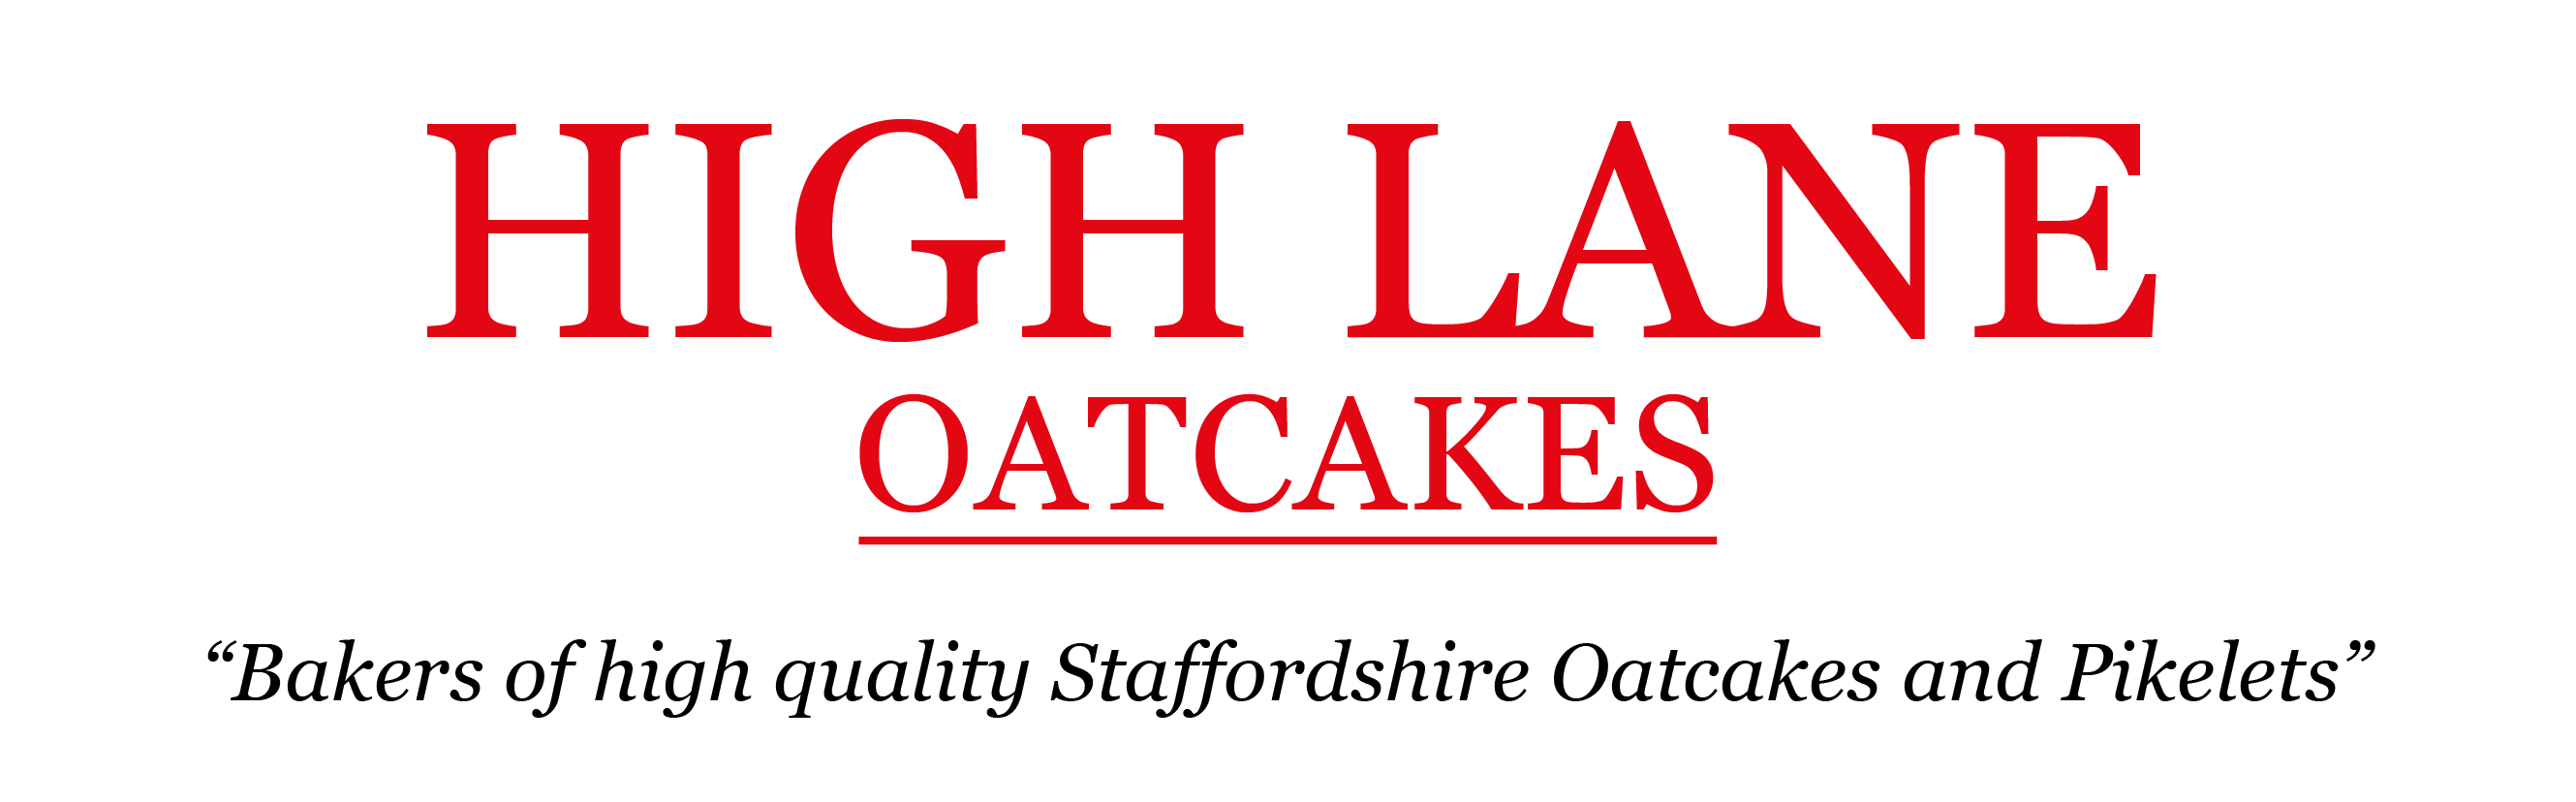 Highlane Oatcakes Logo